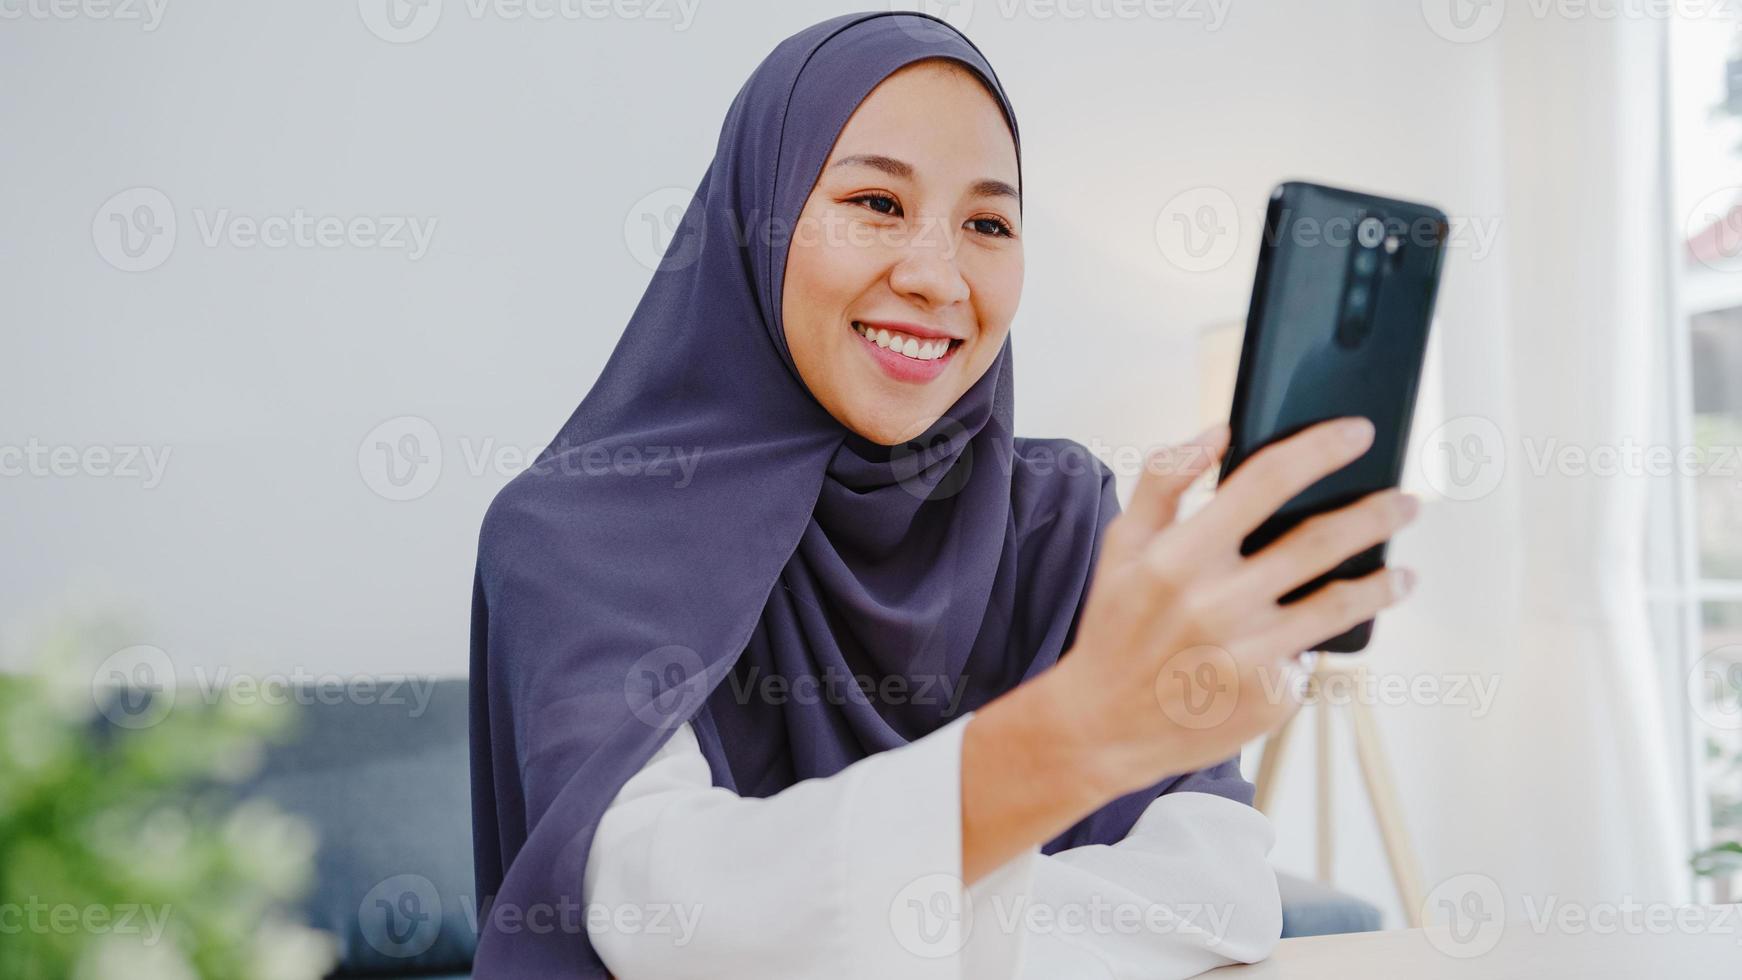 ung asiatisk muslimsk affärskvinna som använder smart telefon prata med en vän genom videochatt -brainstorm online -möte medan hon arbetar på distans hemifrån i vardagsrummet. social distansering, karantän för corona. foto